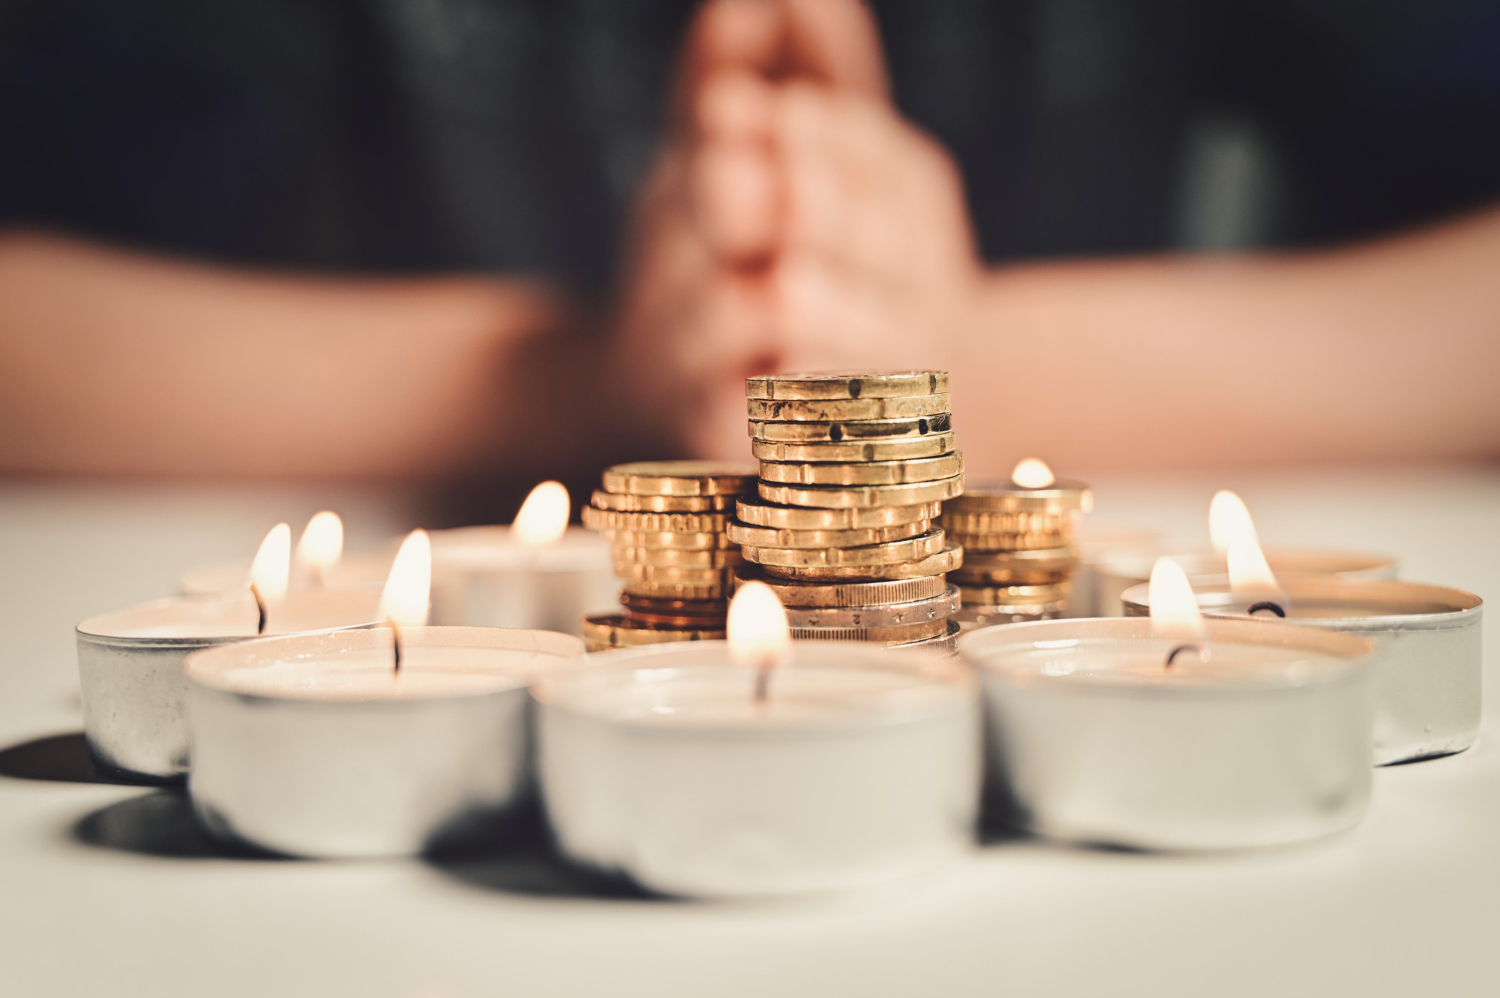 Сильные ритуалы на новолуние: как привлечь деньги и любовь